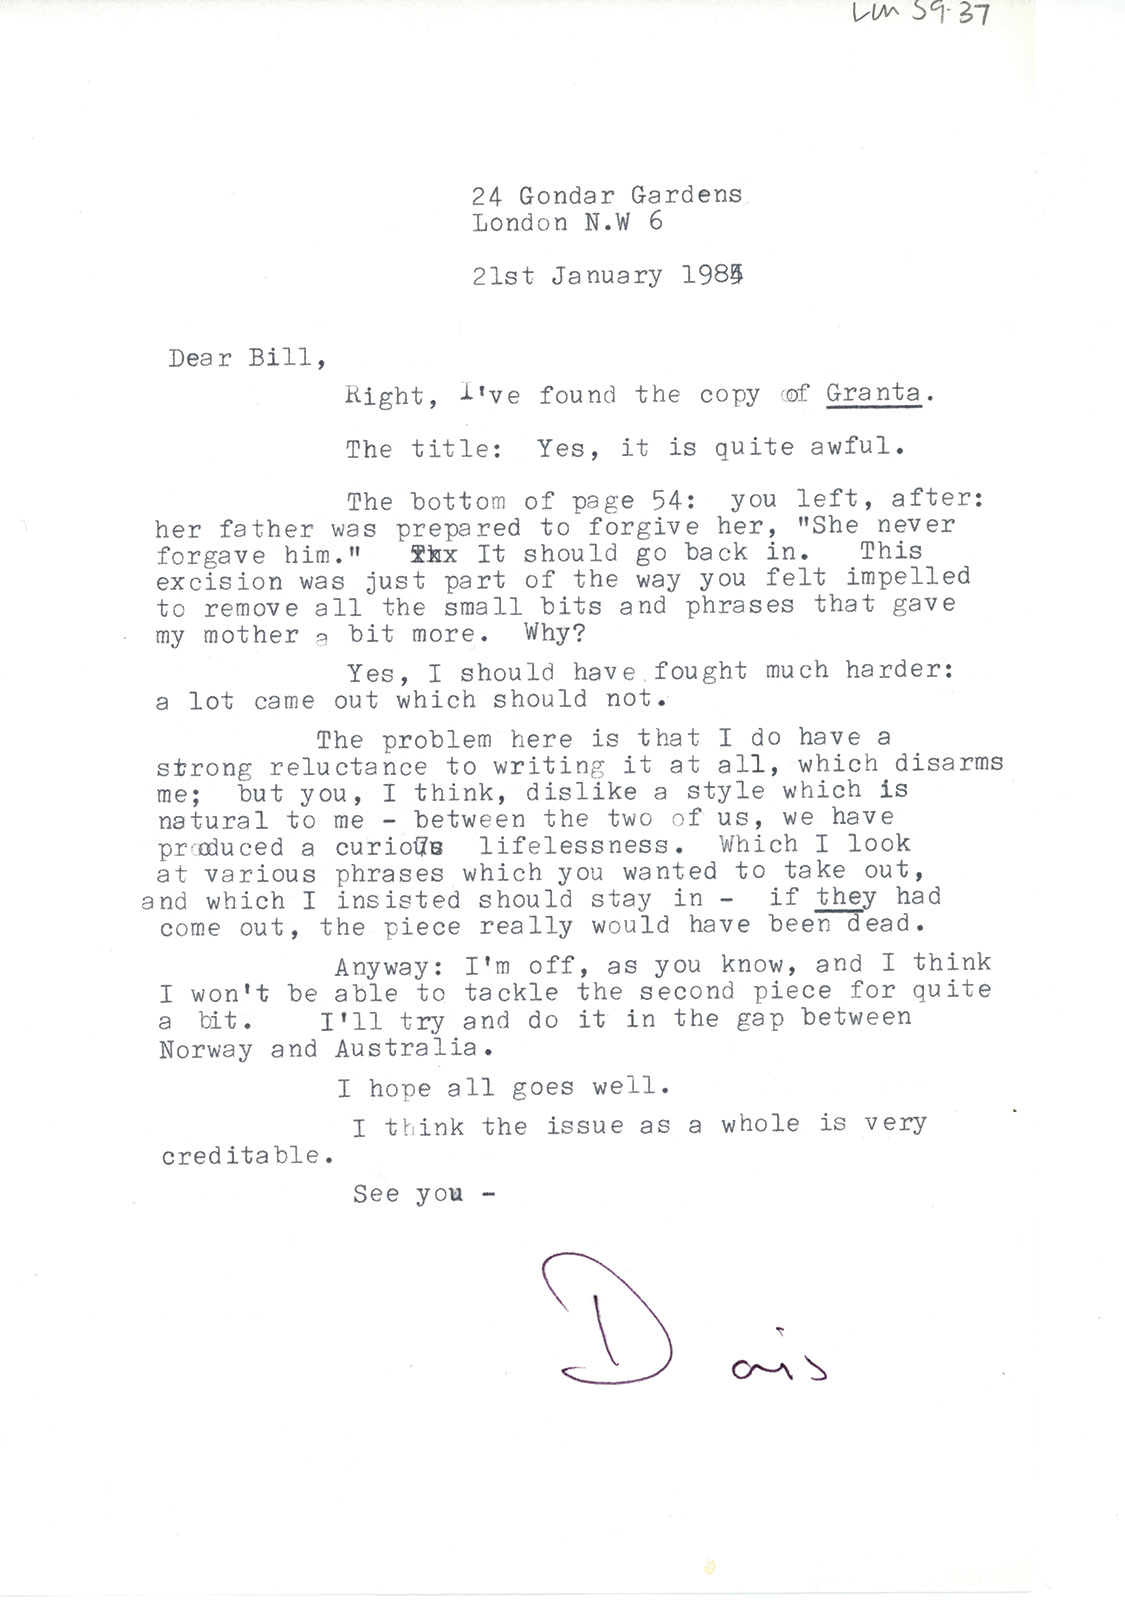 Doris Lessing letter